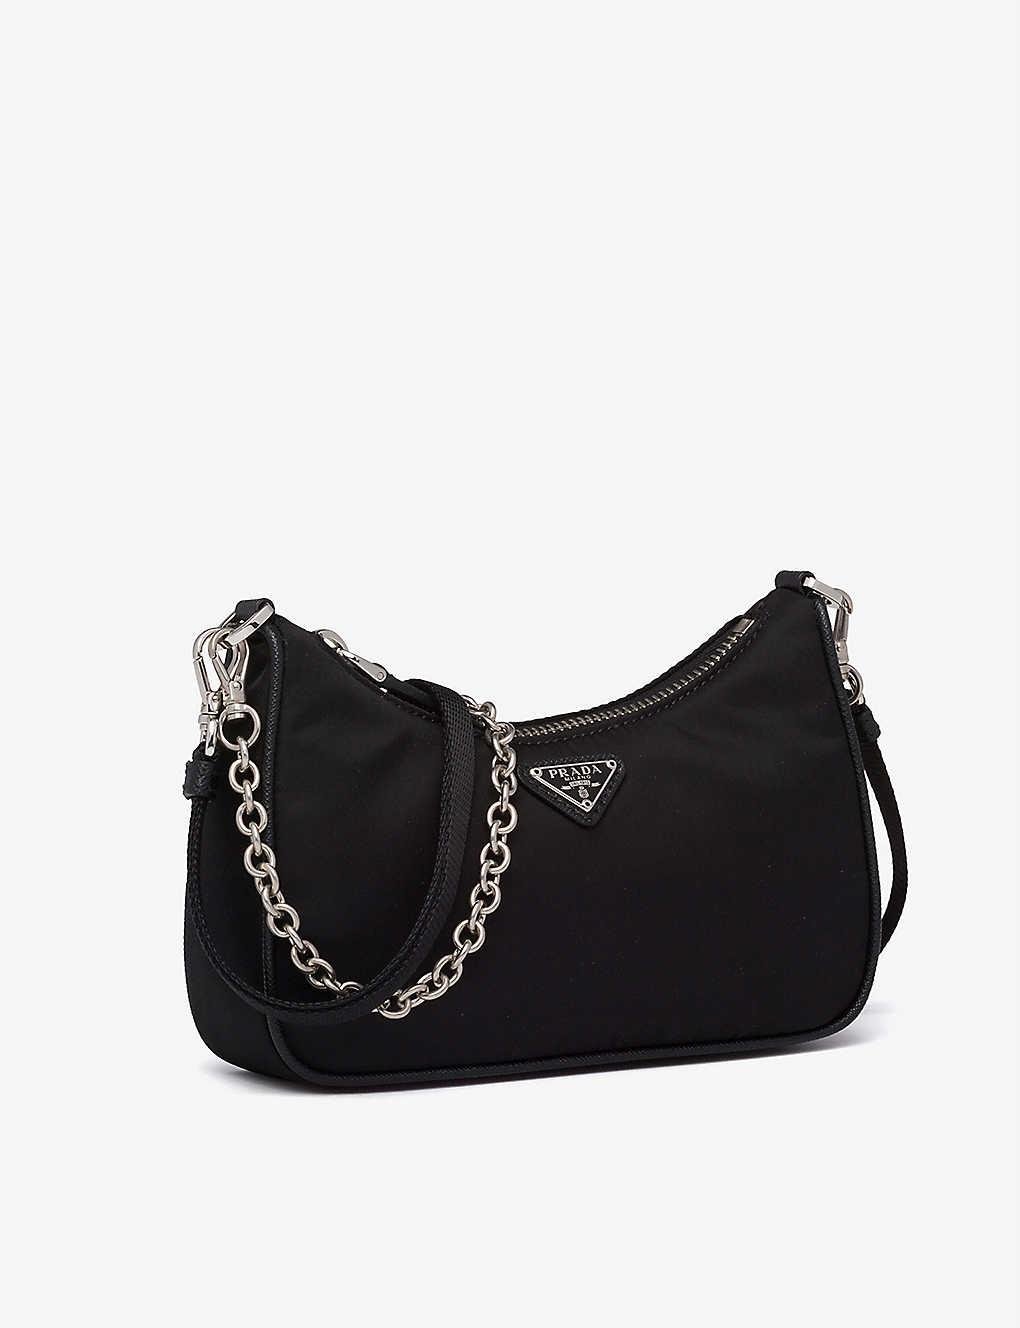 Nylon Crossbody Bag in Black - Prada